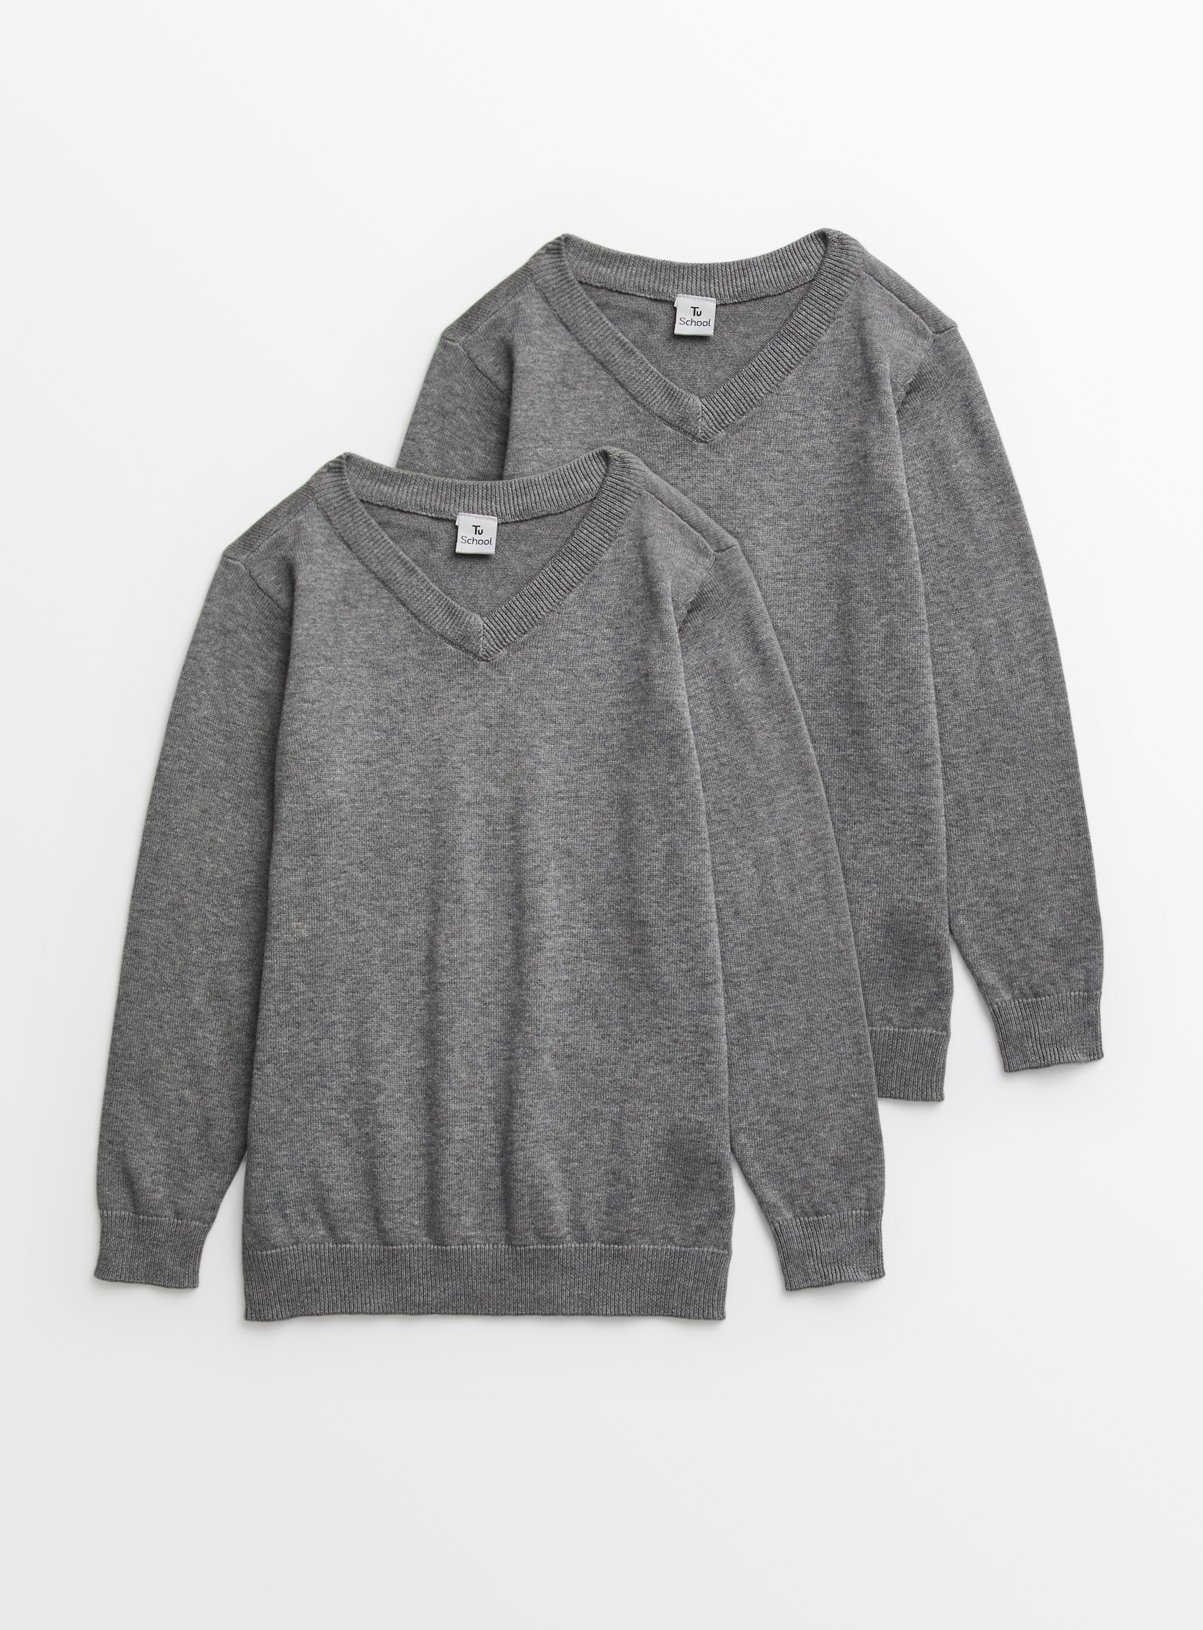 grey v neck sweatshirt